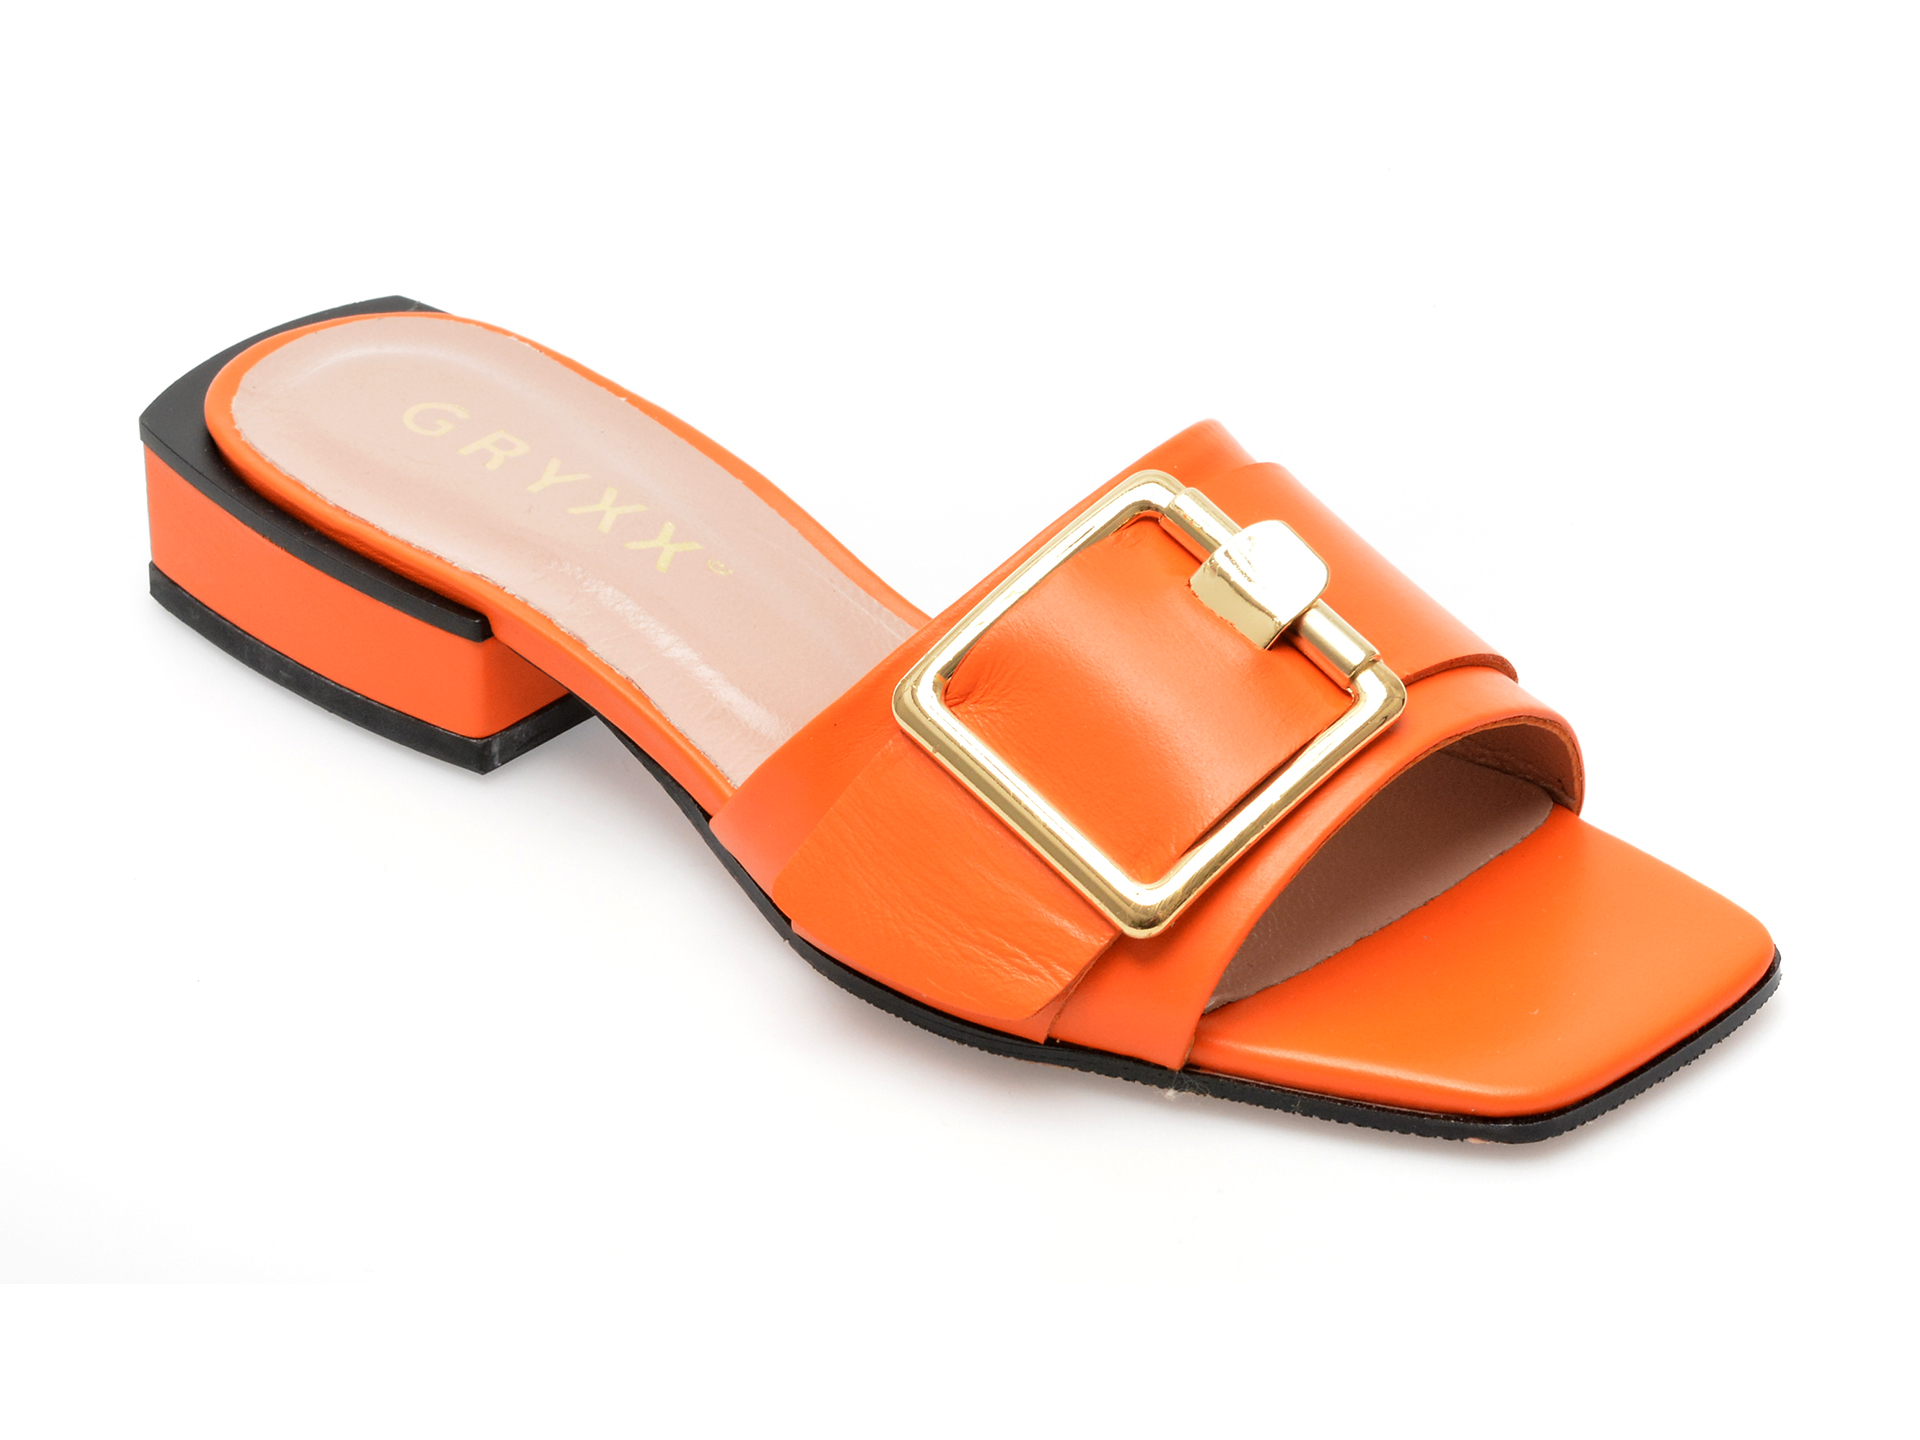 Papuci GRYXX portocalii, 924, din piele naturala femei 2023-03-21